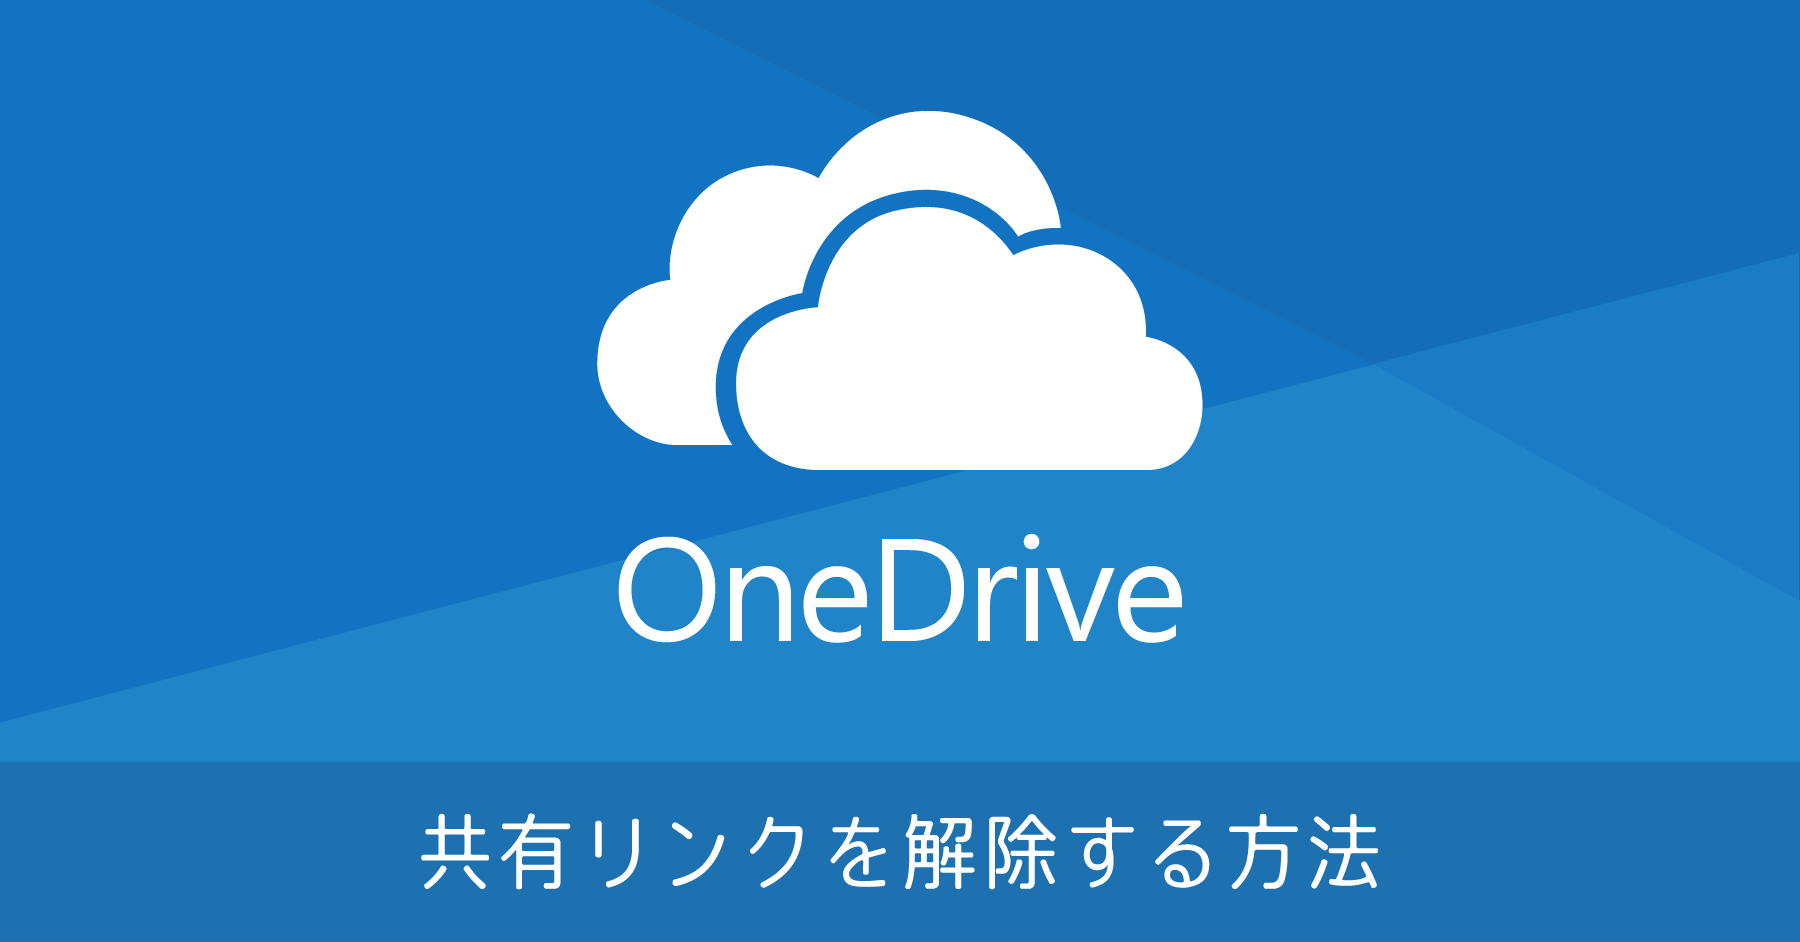 OneDrive で共有したリンクを削除（解除）する方法